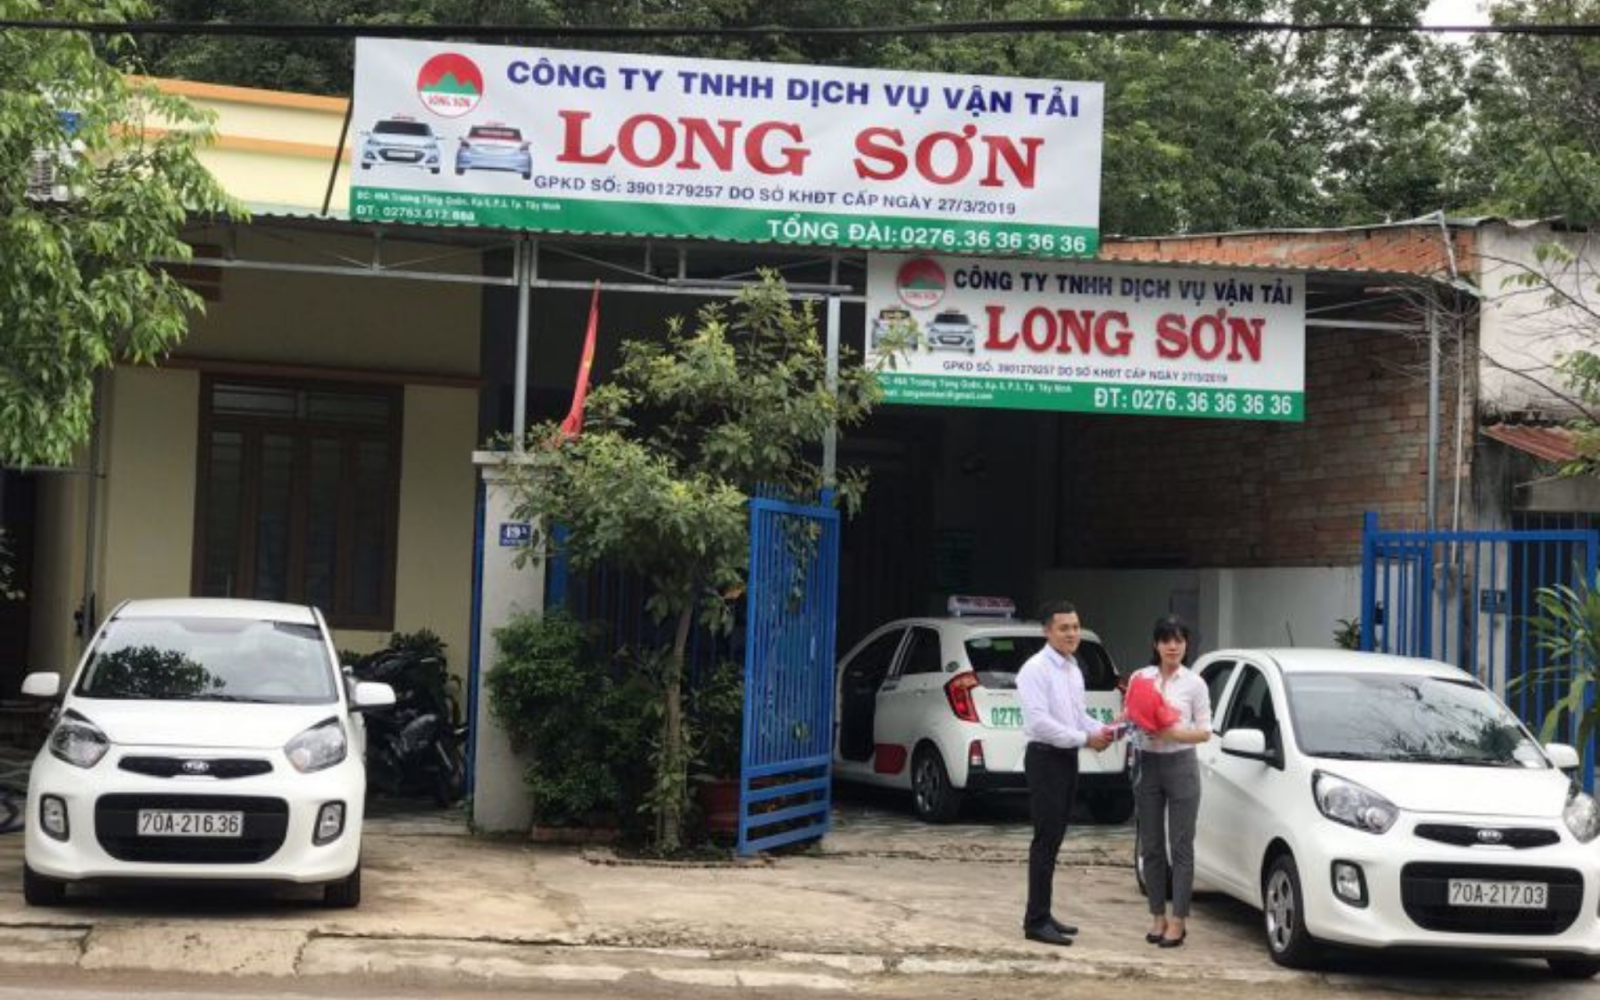 Dịch vụ vận tải Long Sơn